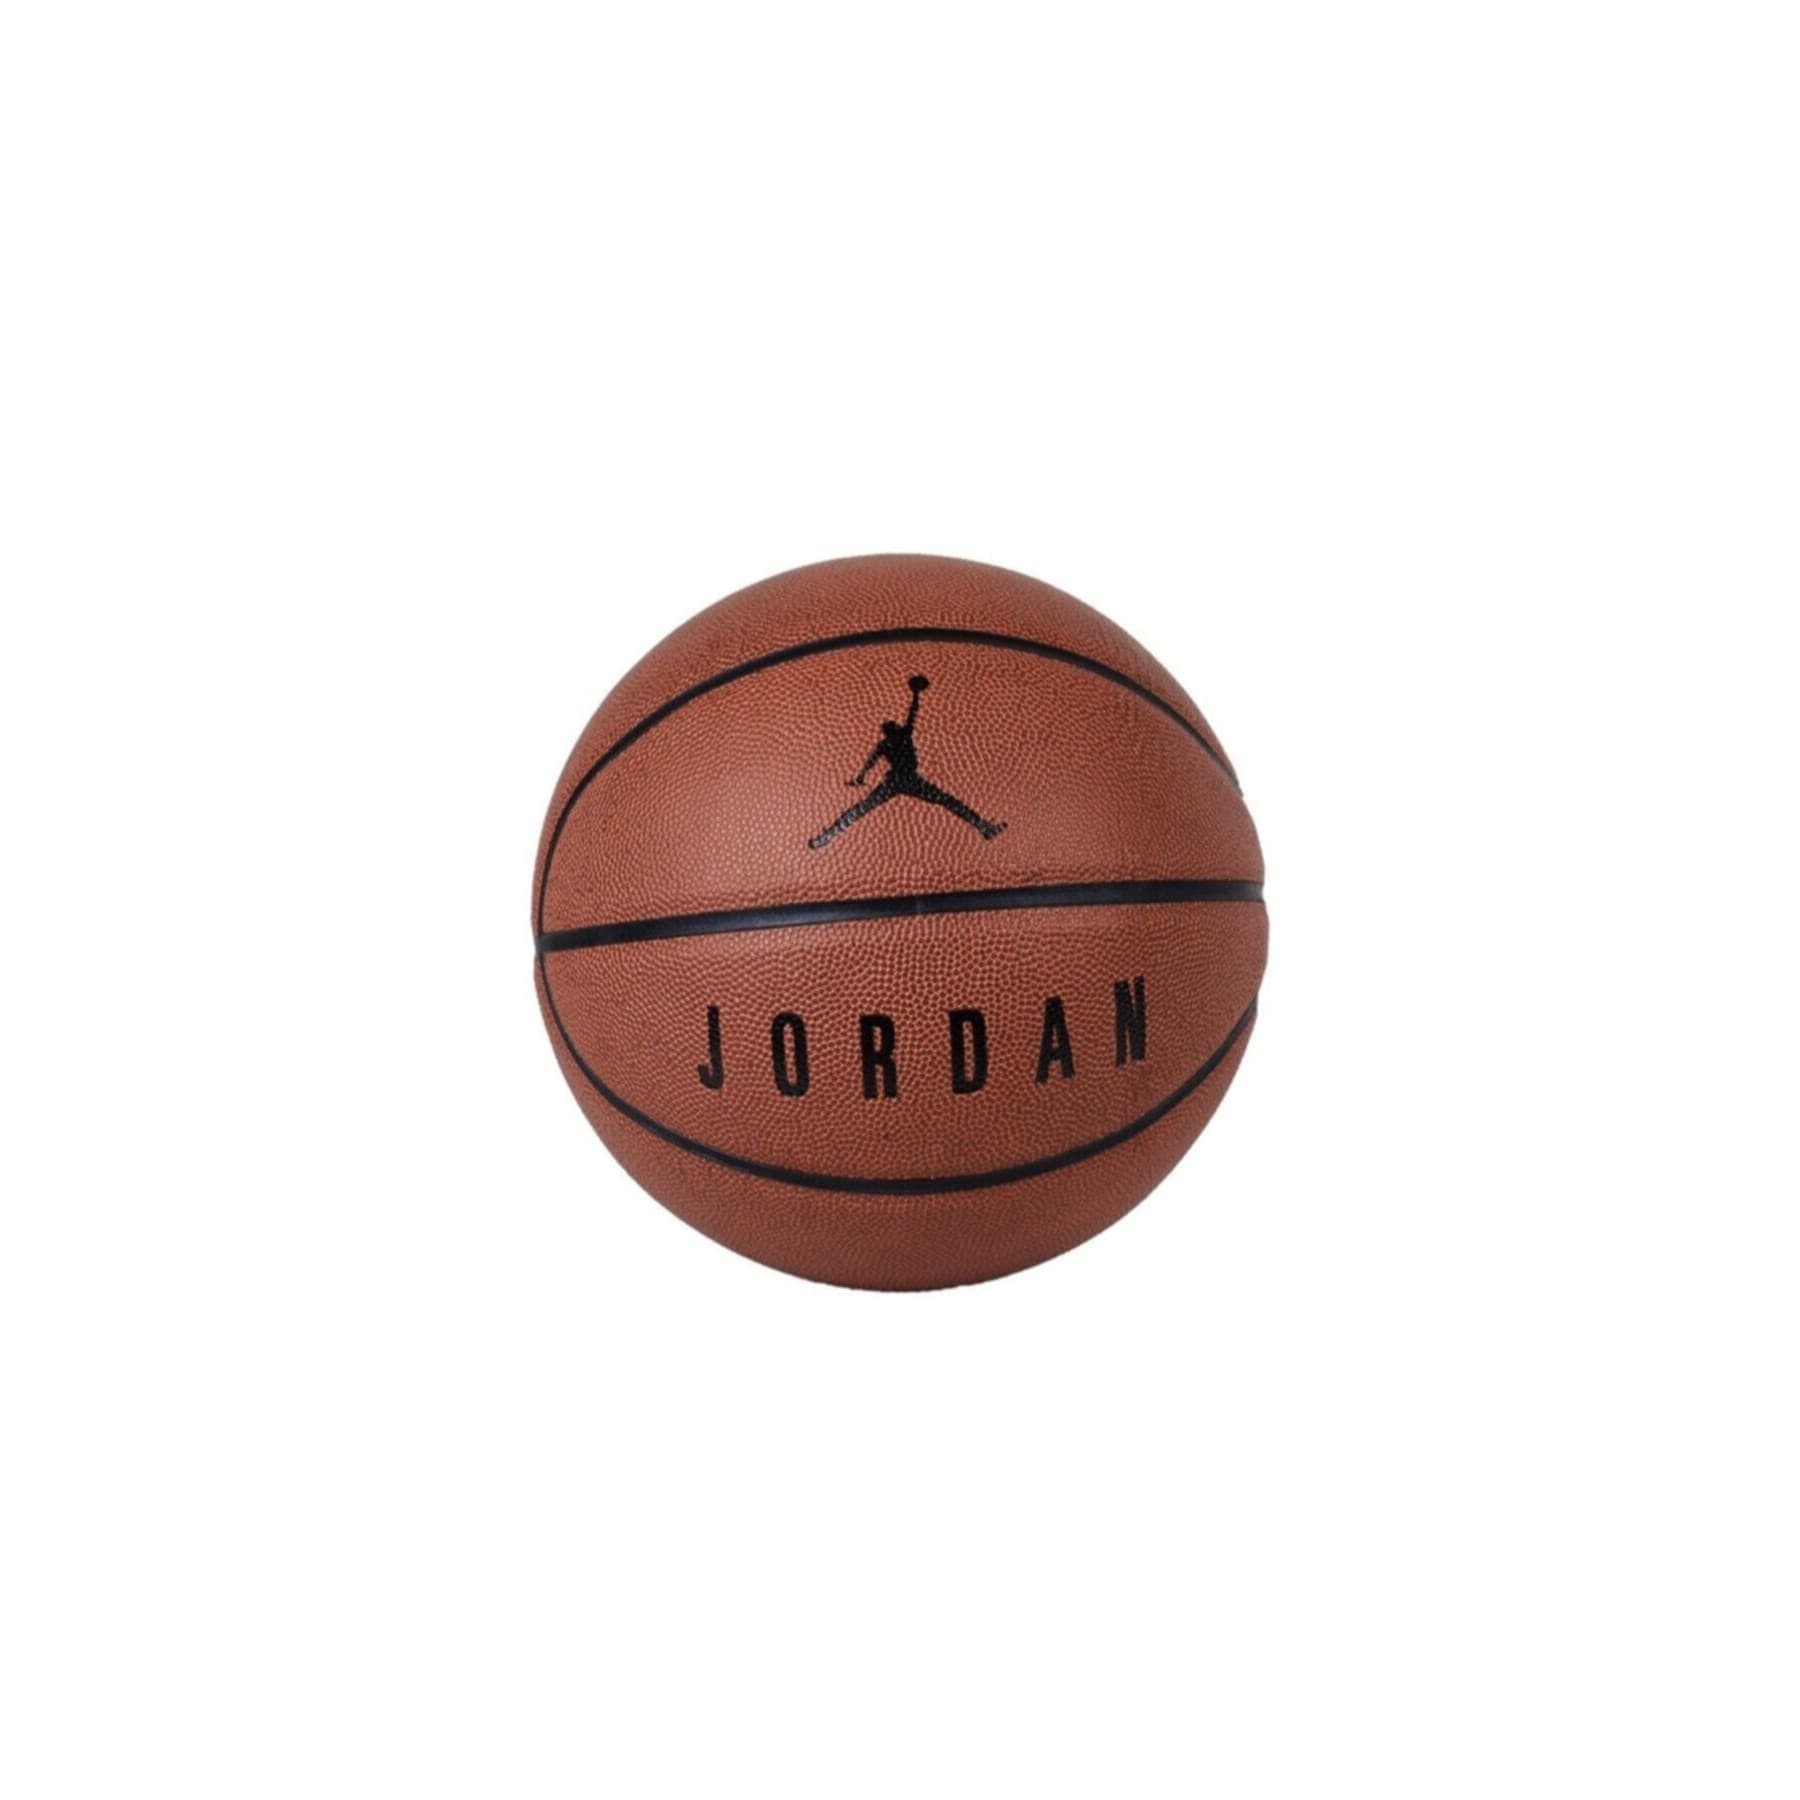 Jordan Ultimate 8P Basketbol Topu (J.KI.12.842.07)